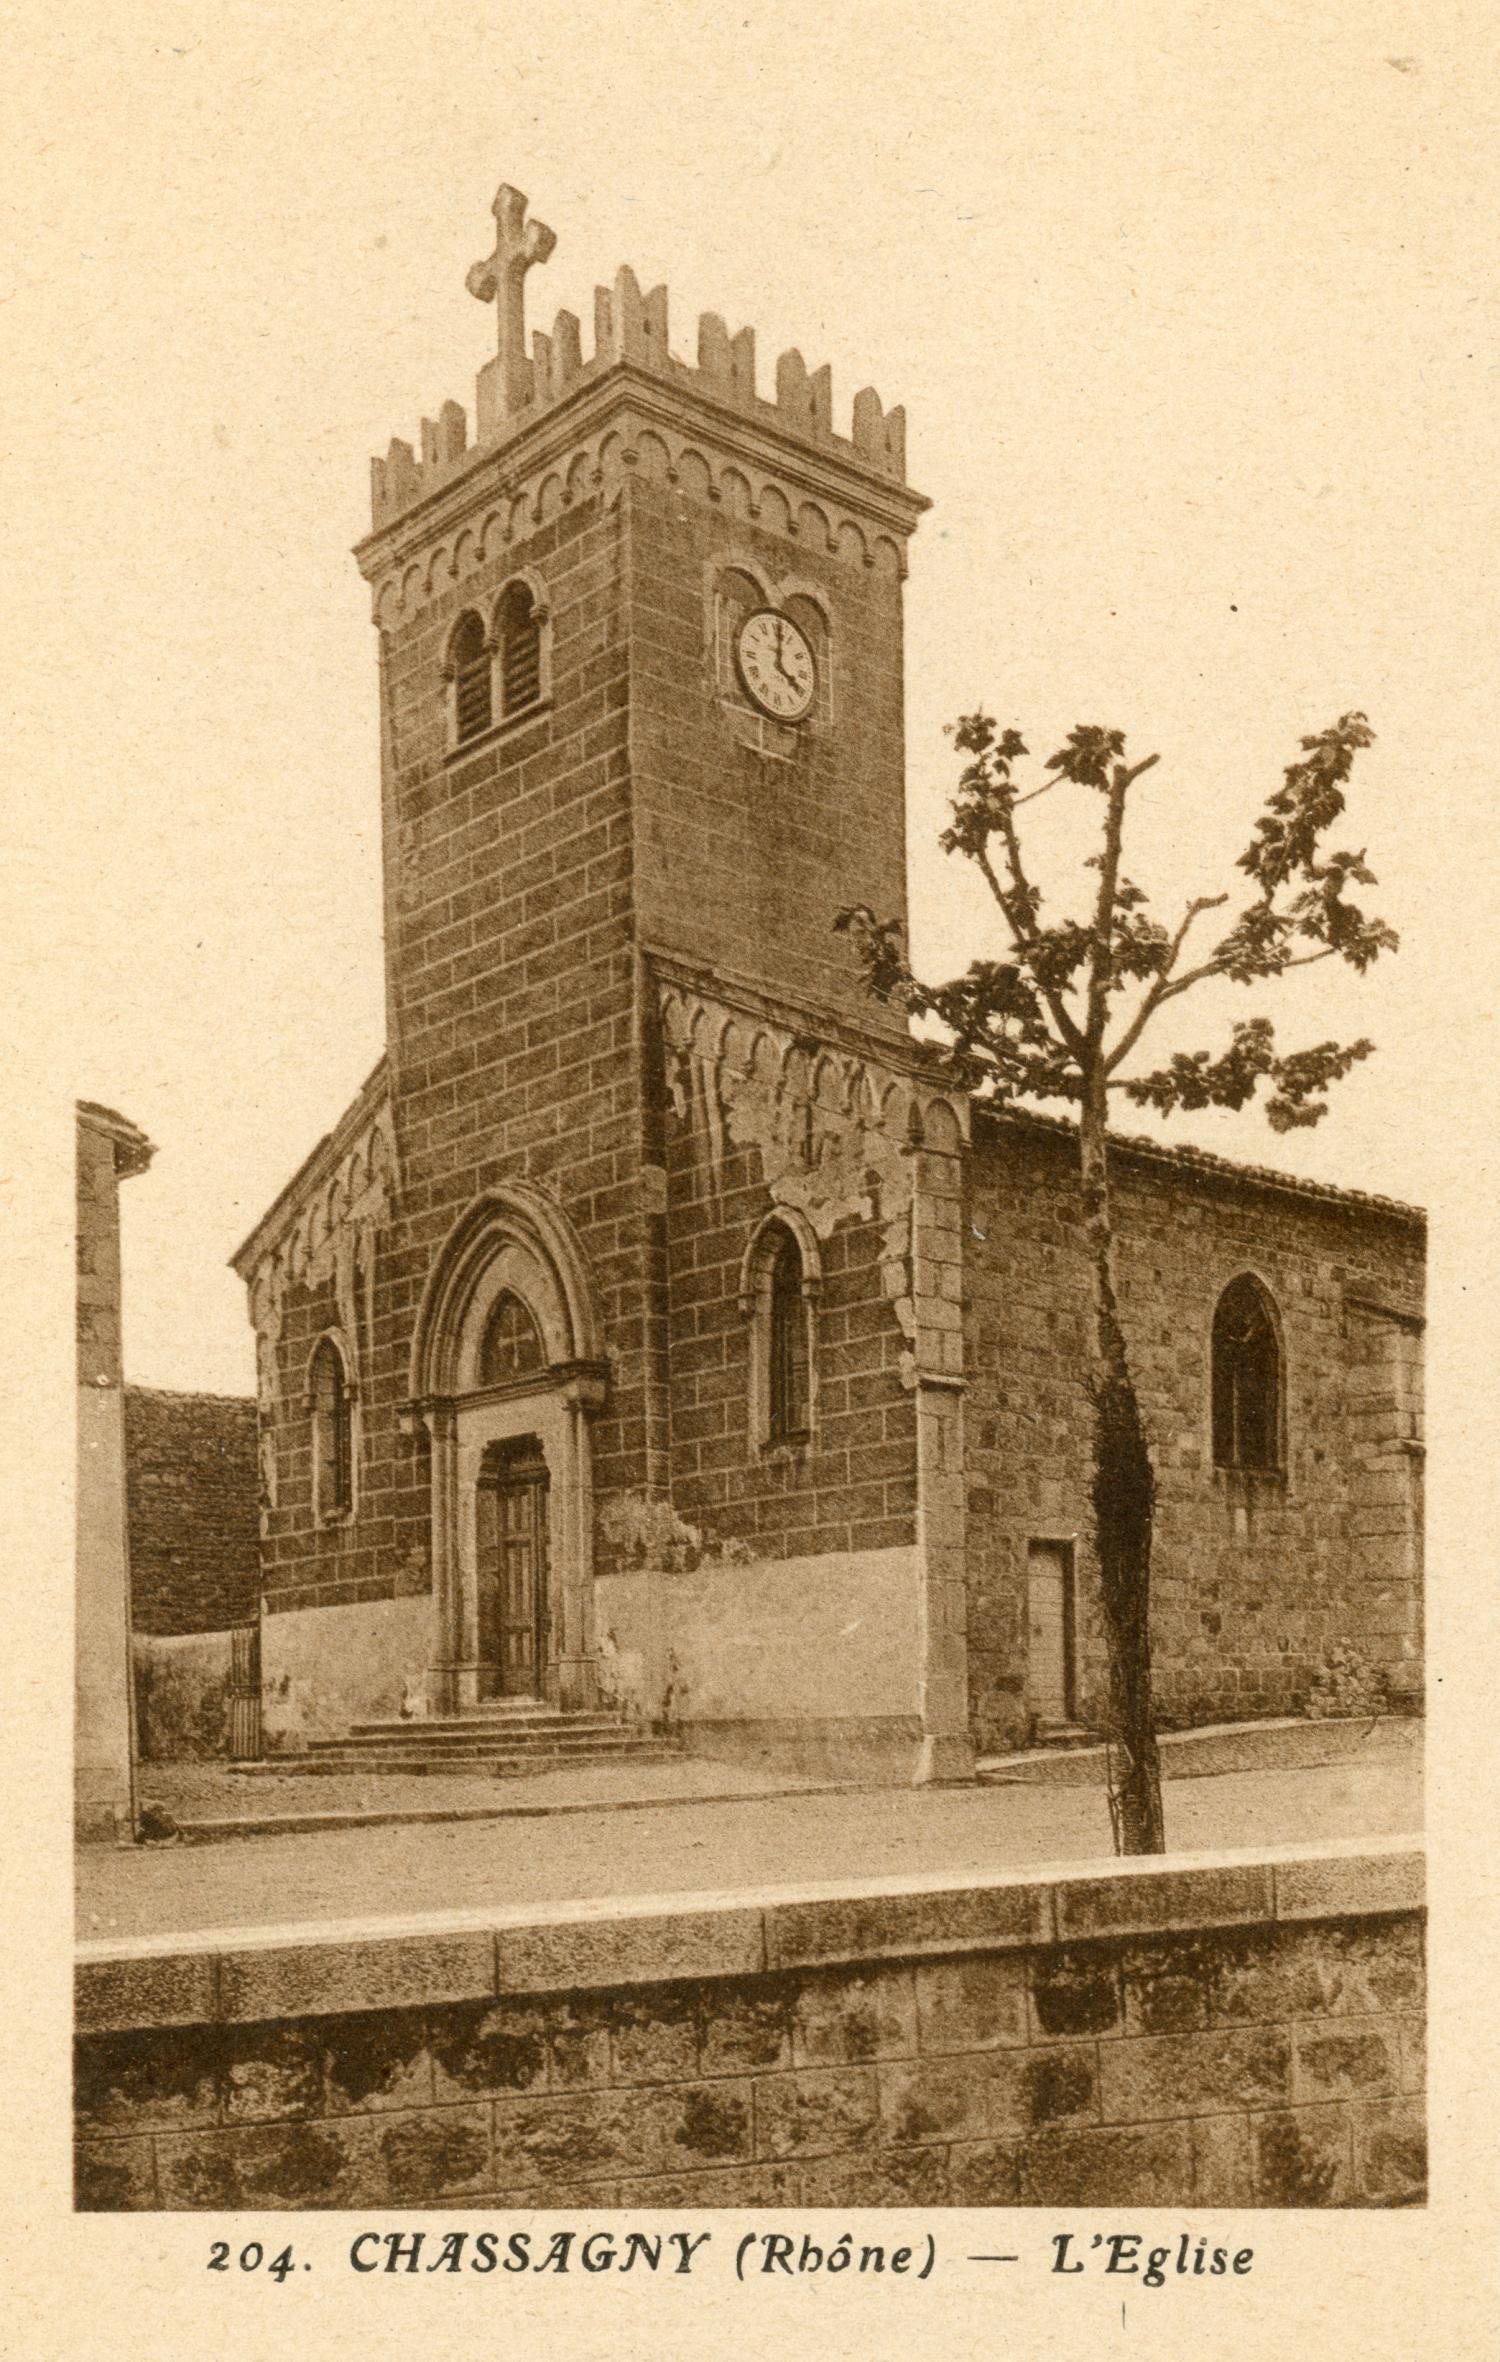 Chassagny (Rhône). - L'église